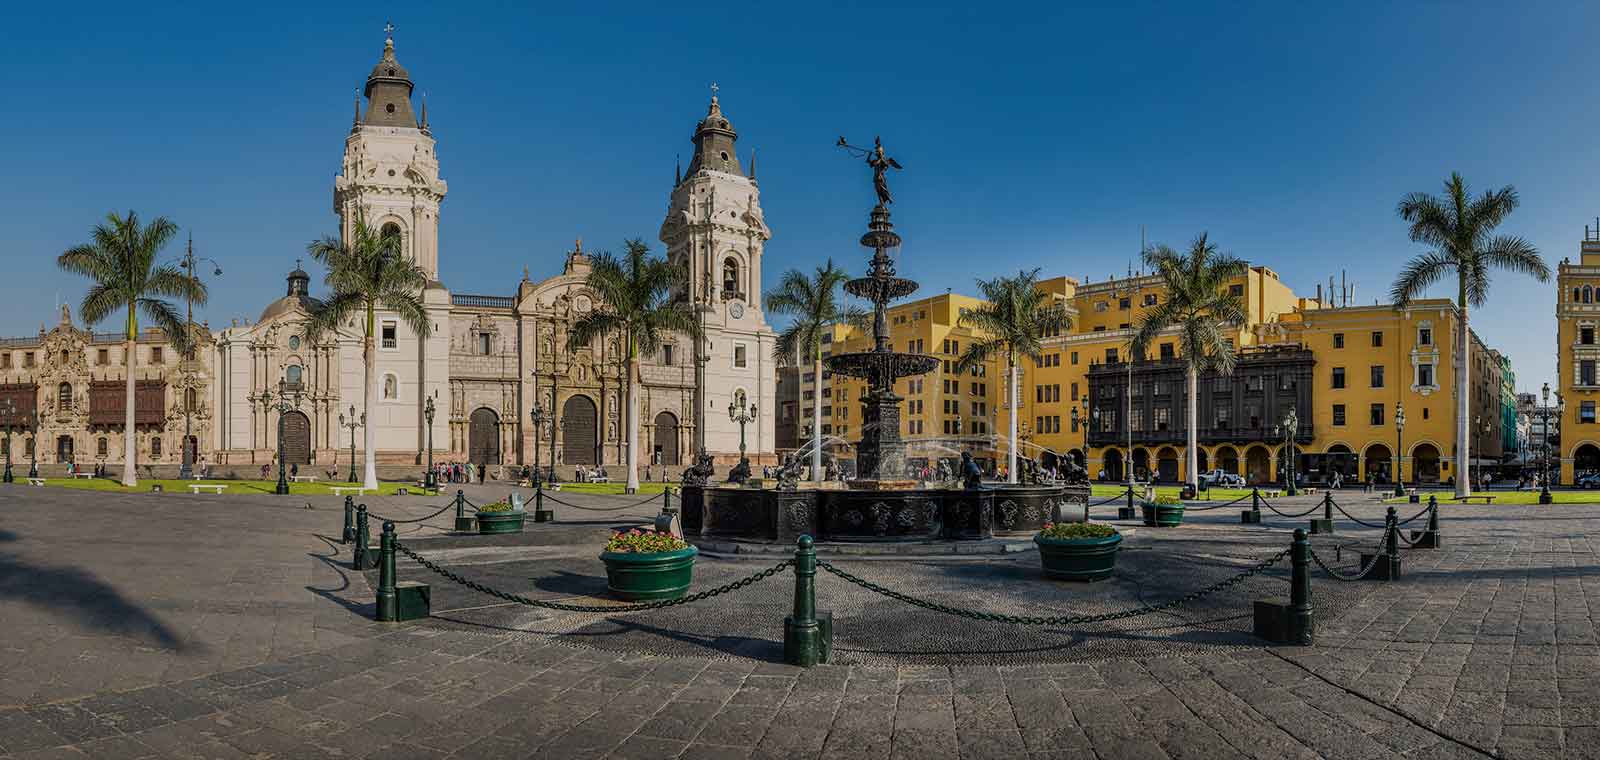 Lima, the gourmet capital